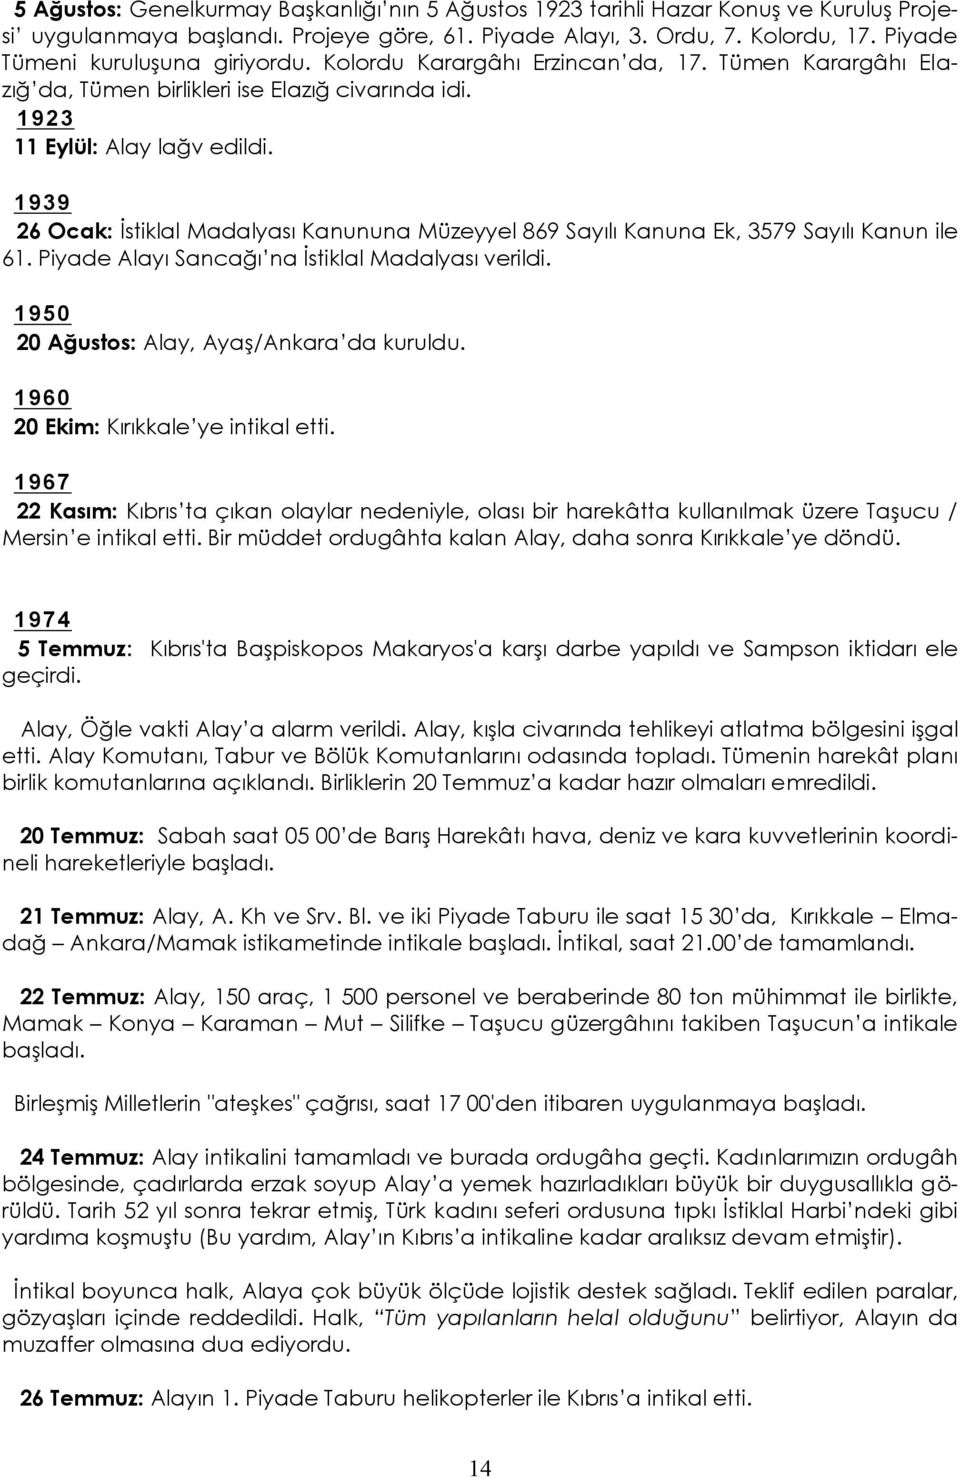 1939 26 Ocak: İstiklal Madalyası Kanununa Müzeyyel 869 Sayılı Kanuna Ek, 3579 Sayılı Kanun ile 61. Piyade Alayı Sancağı na İstiklal Madalyası verildi. 1950 20 Ağustos: Alay, Ayaş/Ankara da kuruldu.